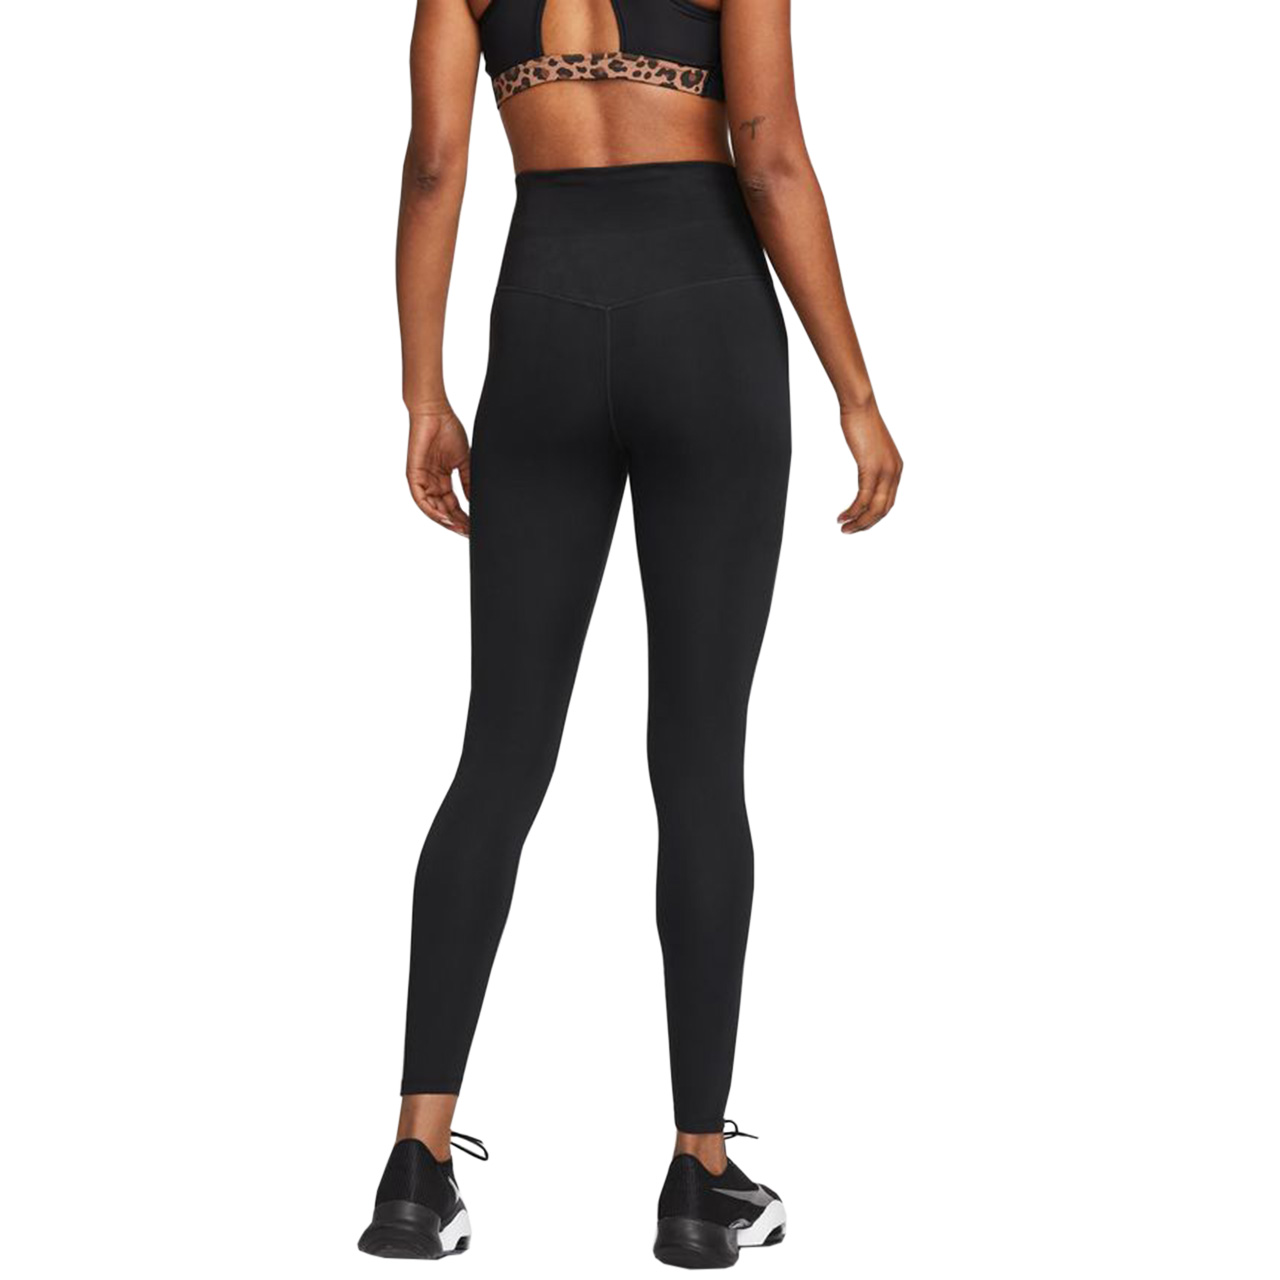 Legginsy damskie Nike Dri Fit One HR Tight Czarne DM7278 010 » Kobieta »  Odzież damska » Legginsy damskie - sklep internetowy MaxxxSport